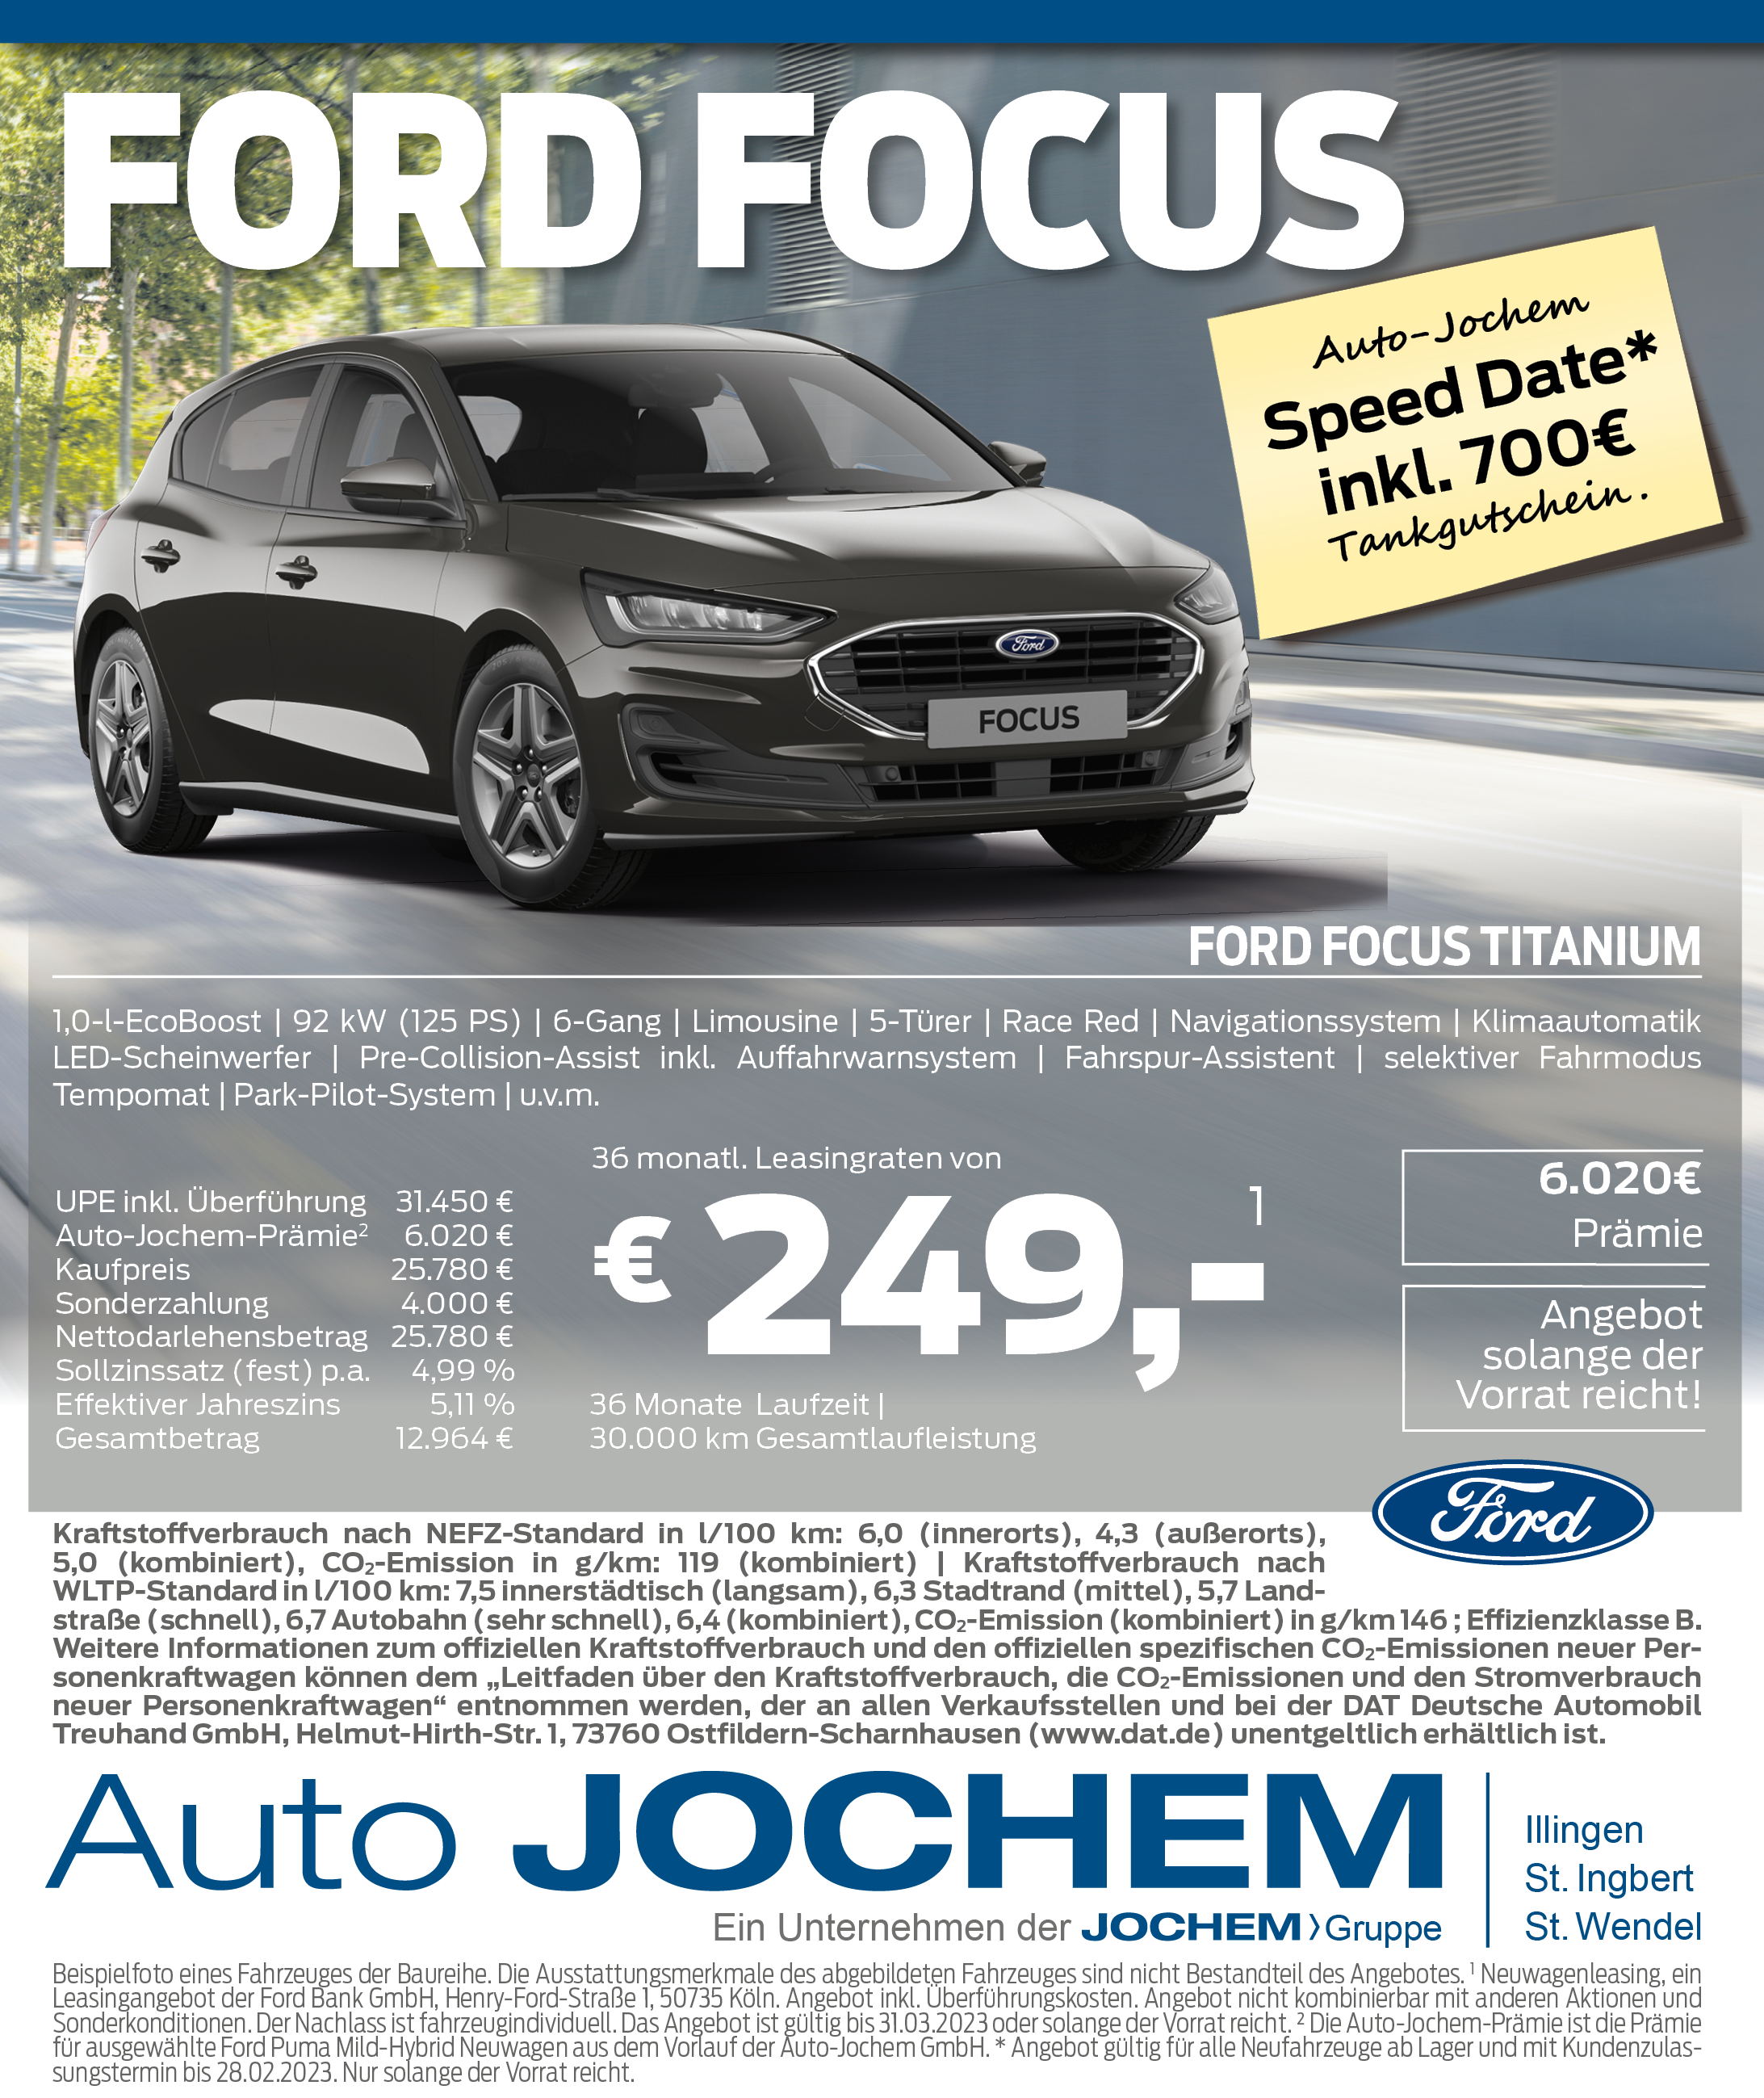 Angebot Ford Focus | Auto-Jochem GmbH in Illingen, St. Ingbert und St. Wendel